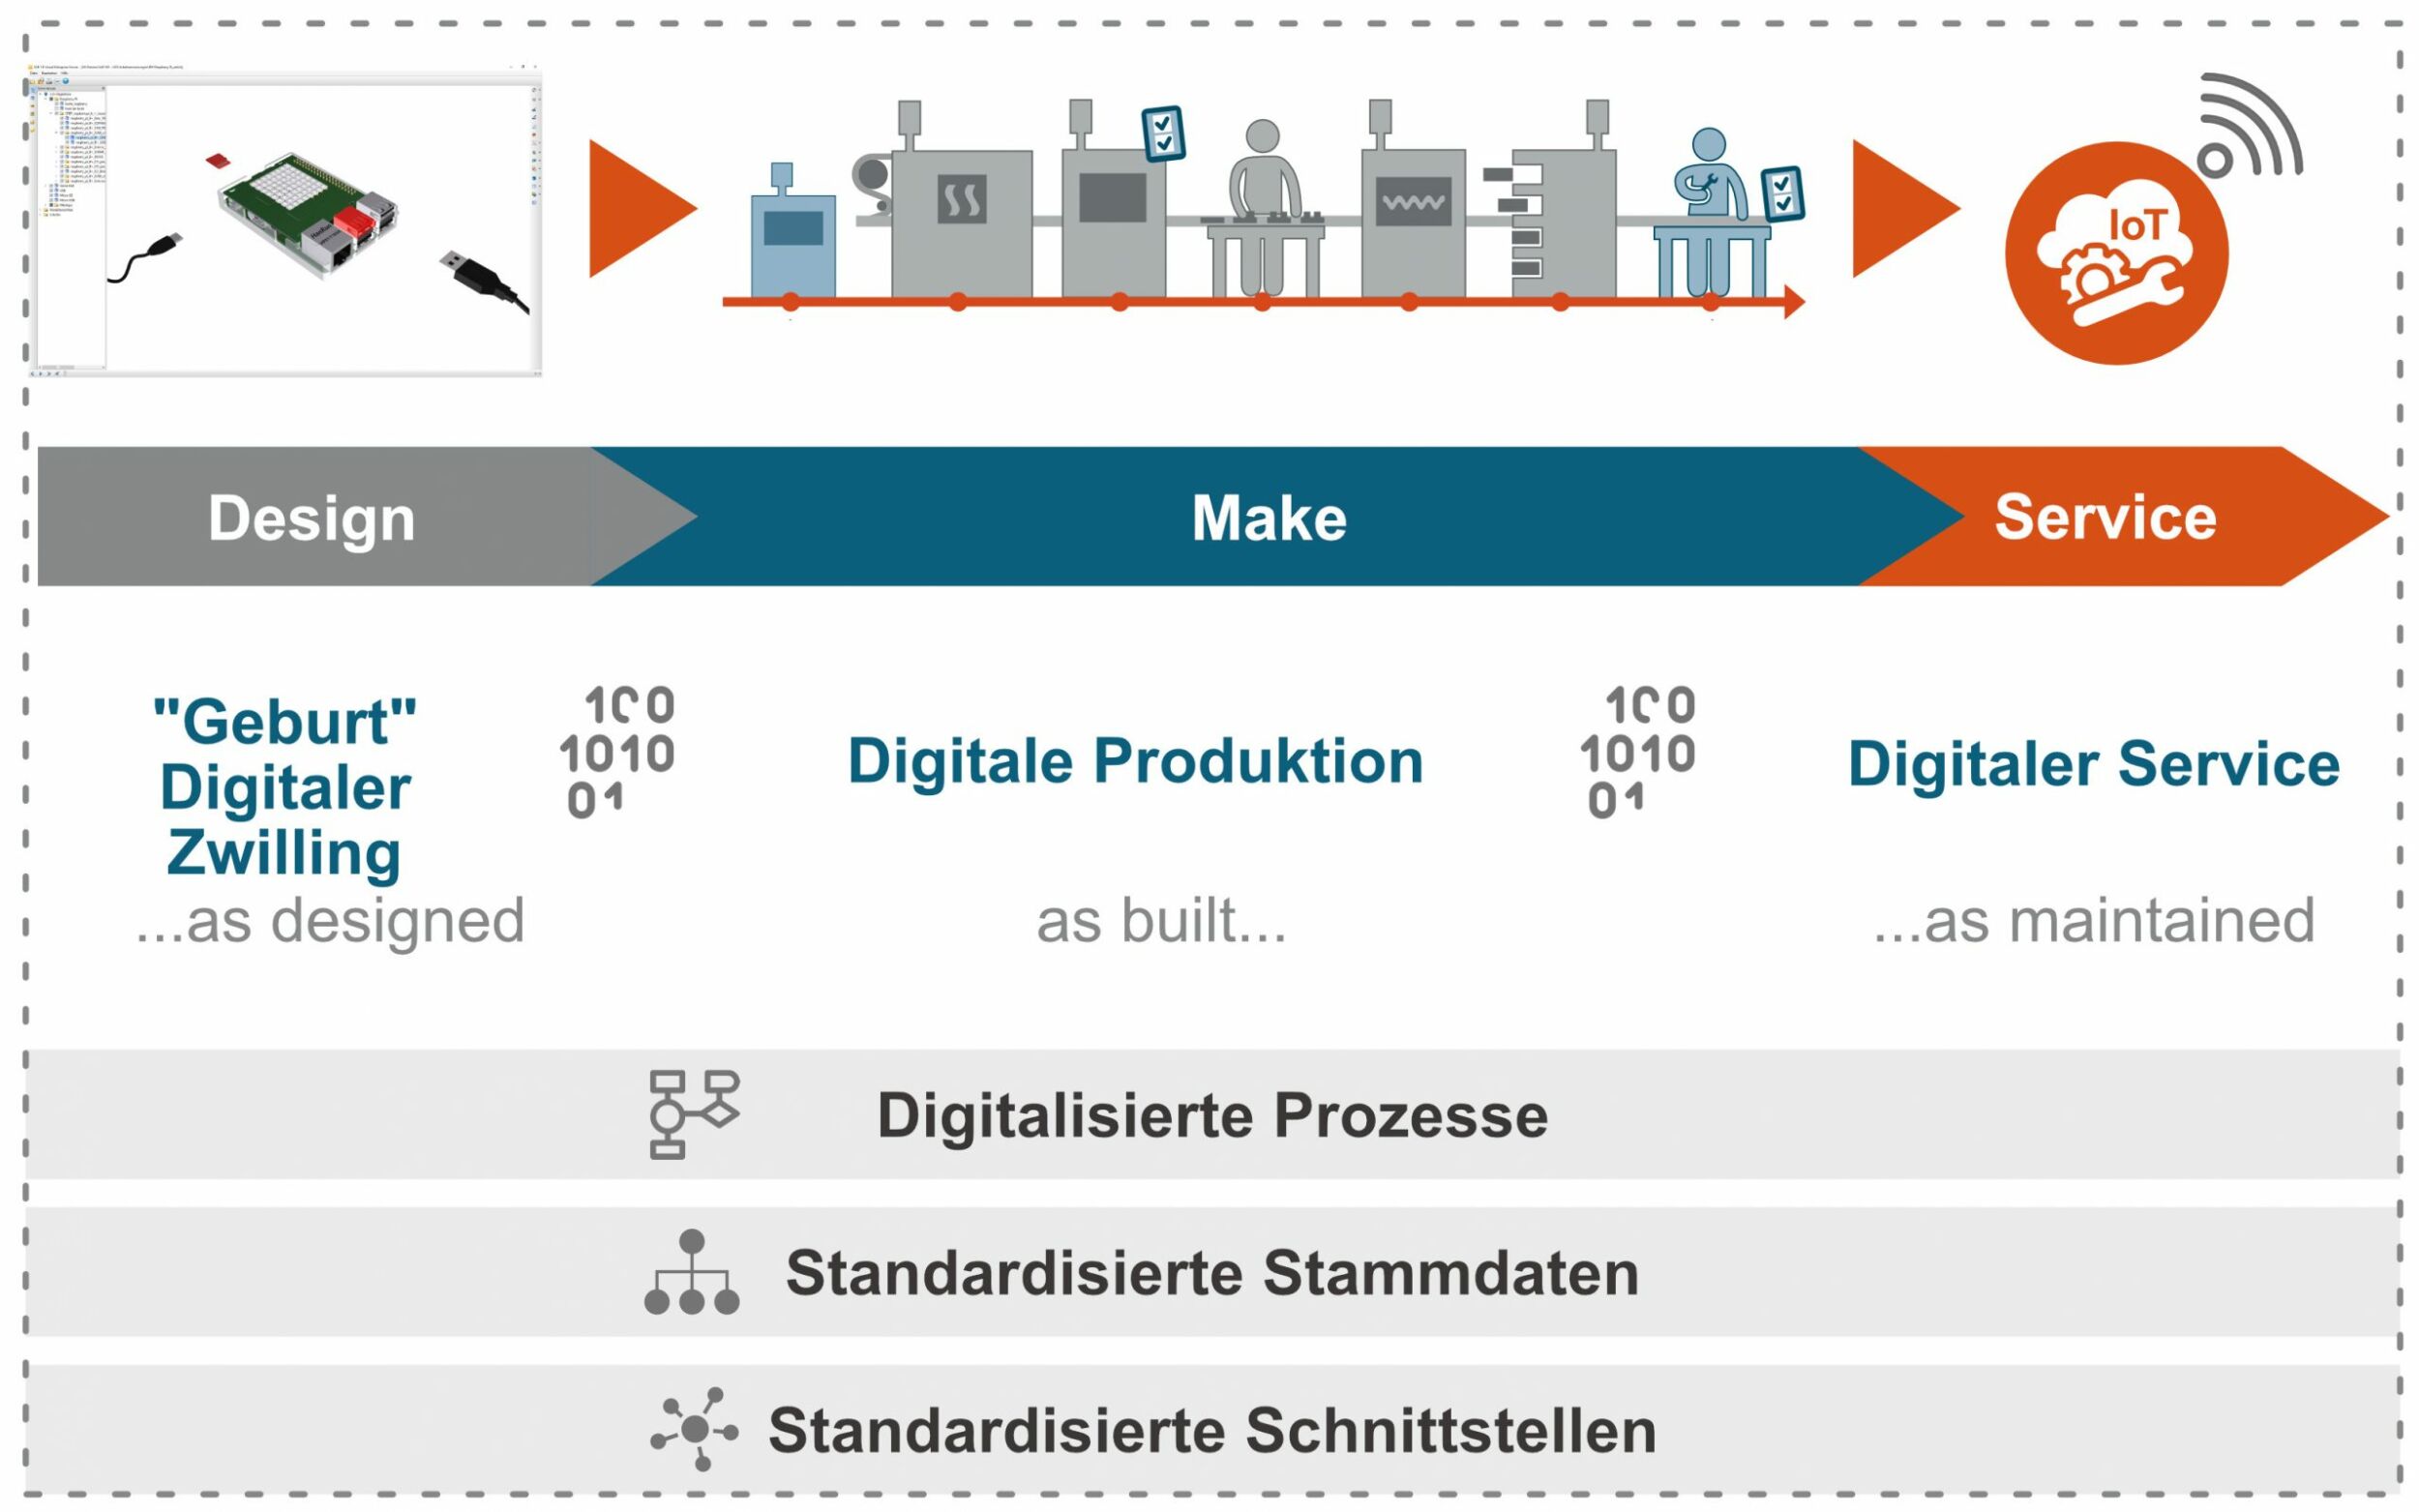 Standardisierte Infrastruktur (Bild: Trebing & Himstedt Prozeßautomation GmbH & Co. KG)